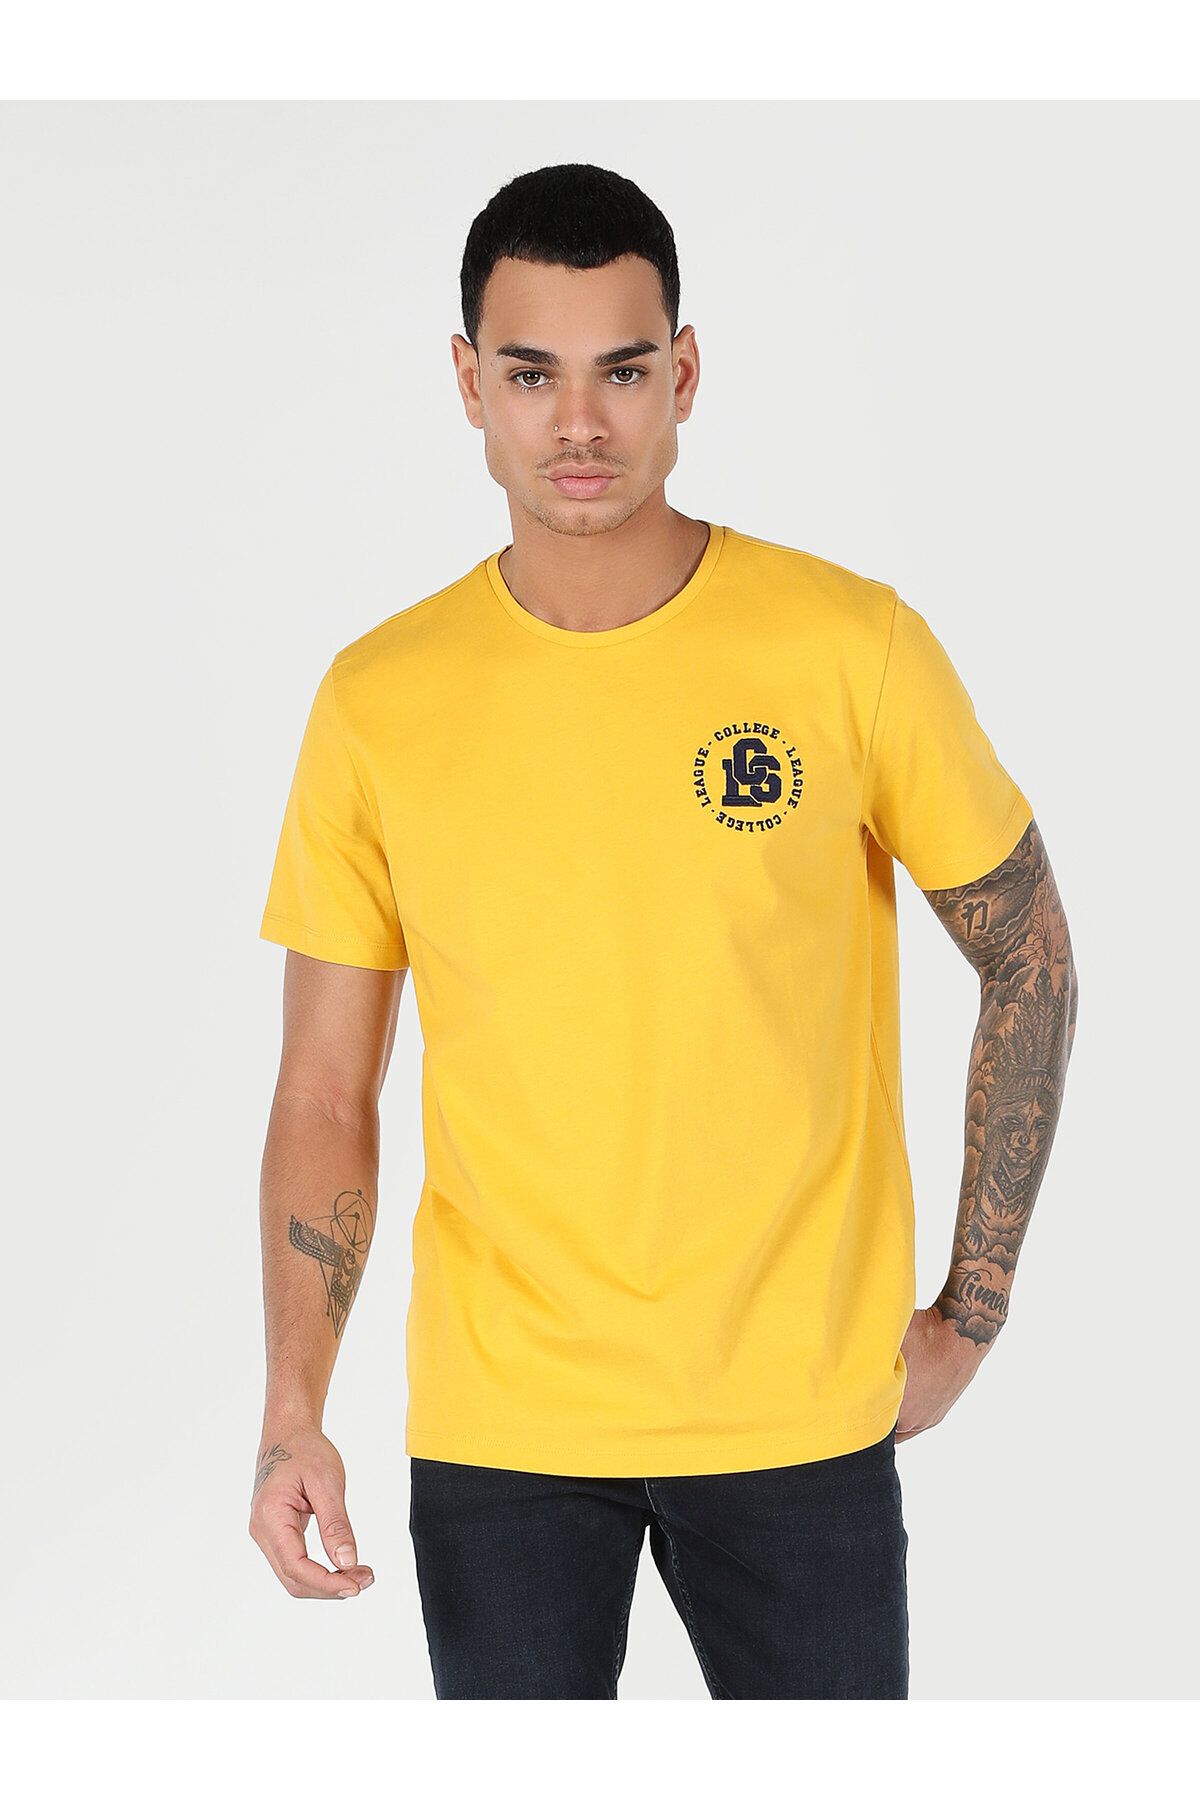 Colin’s یقه دوچرخه تناسب منظم چاپ شده مردان زرد رنگ T Shirt